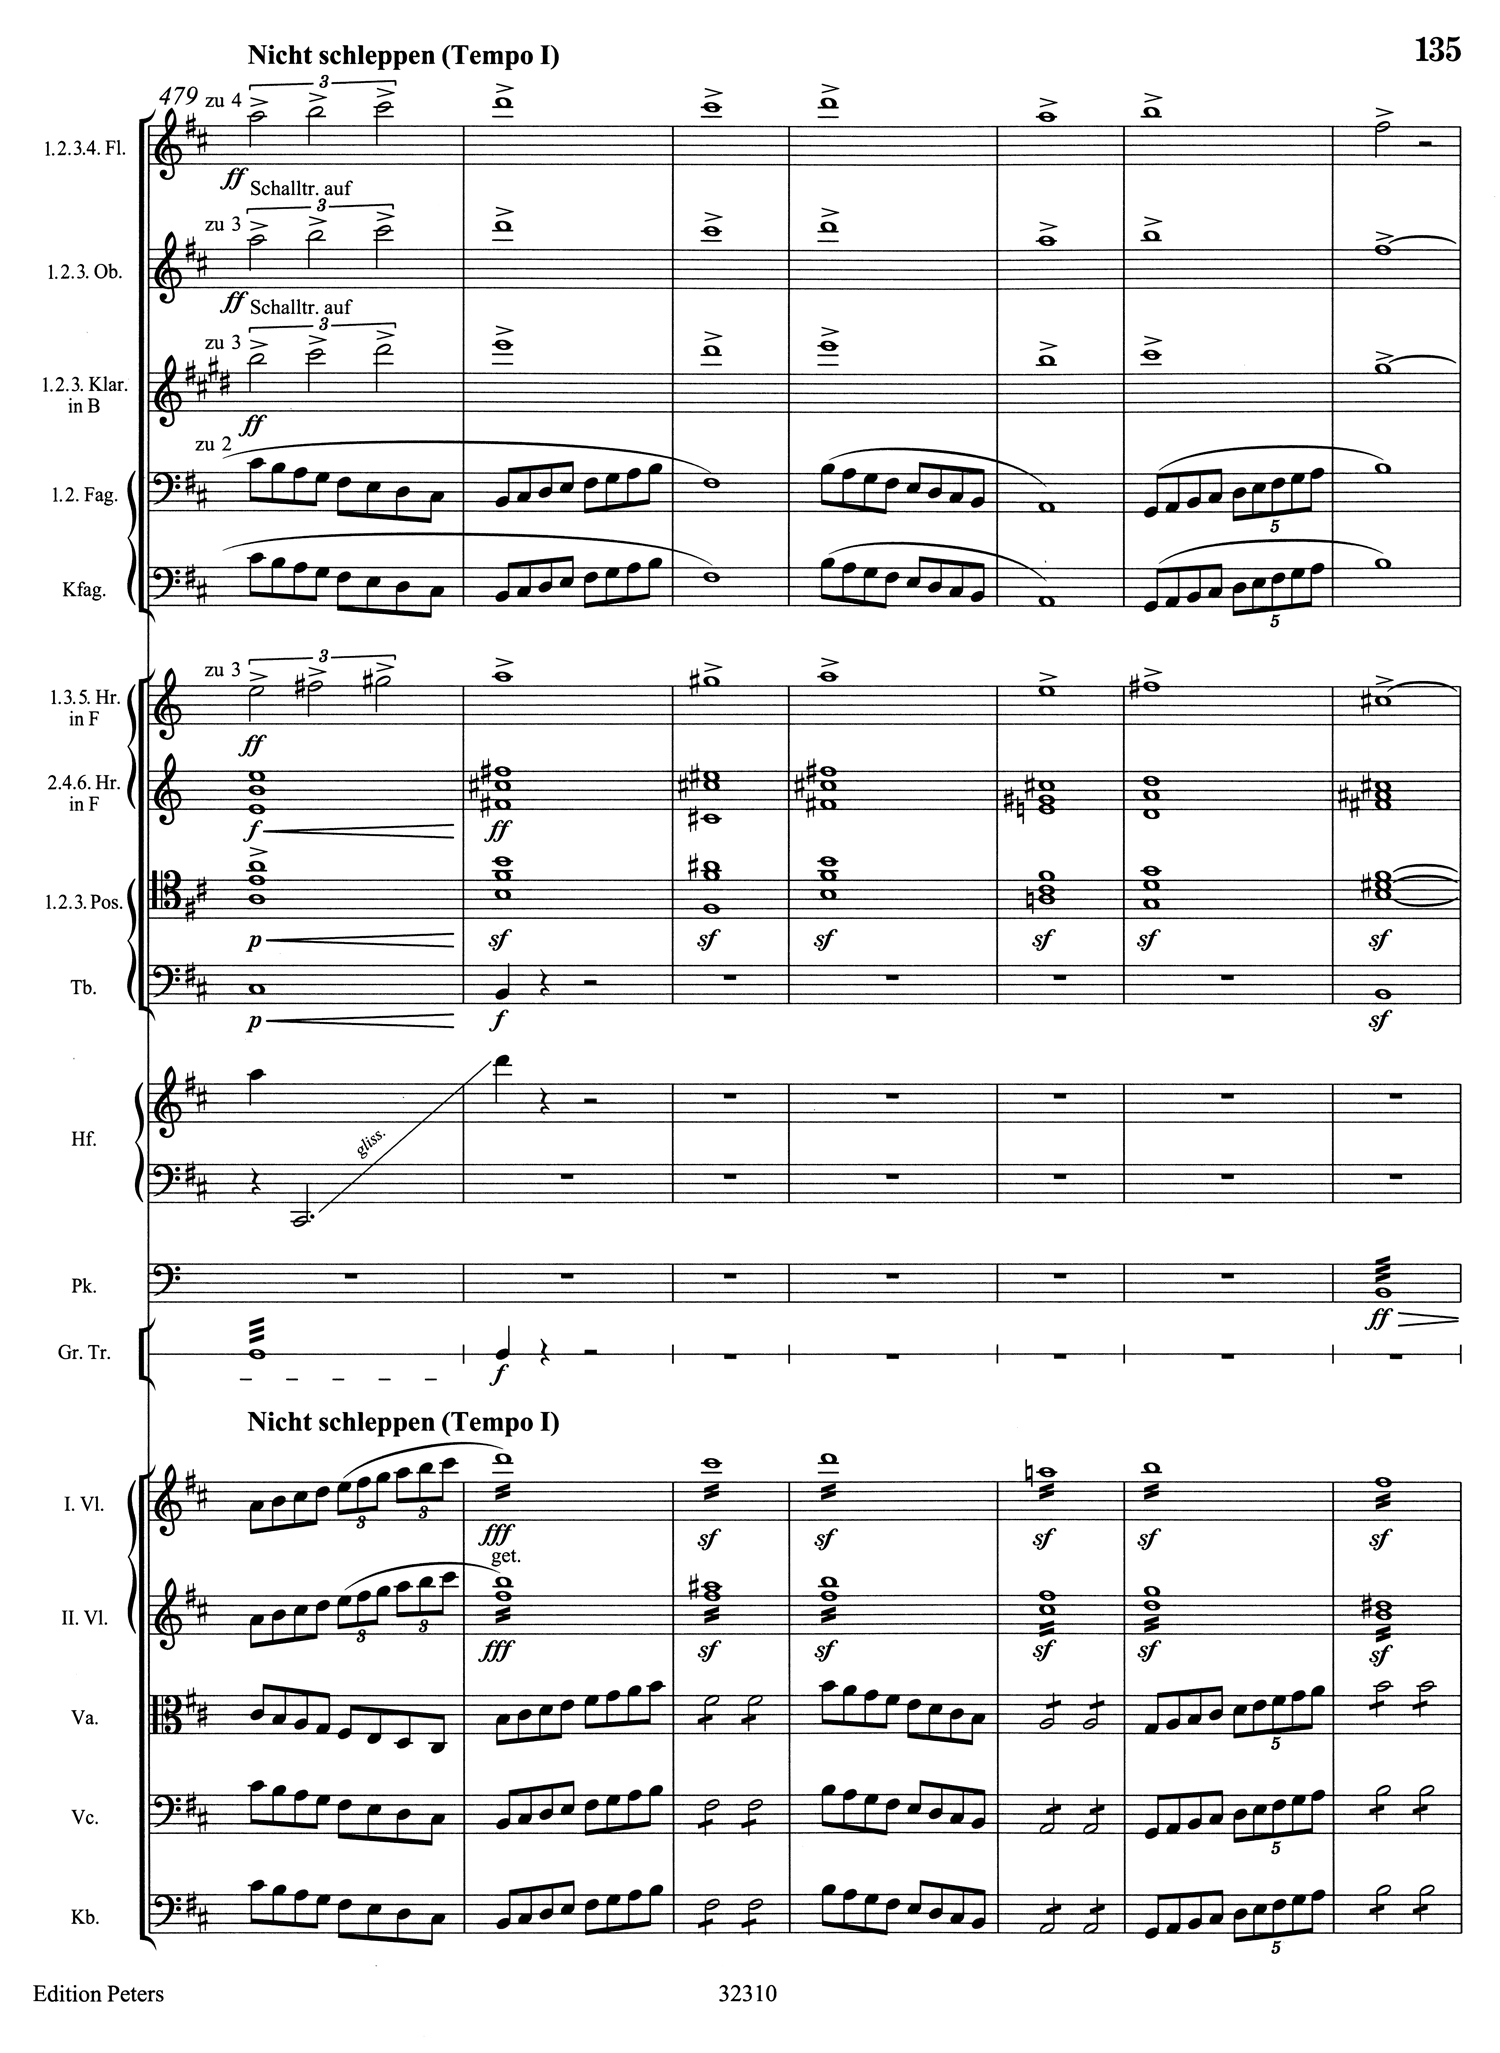 Mahler 5 Score 10.jpg